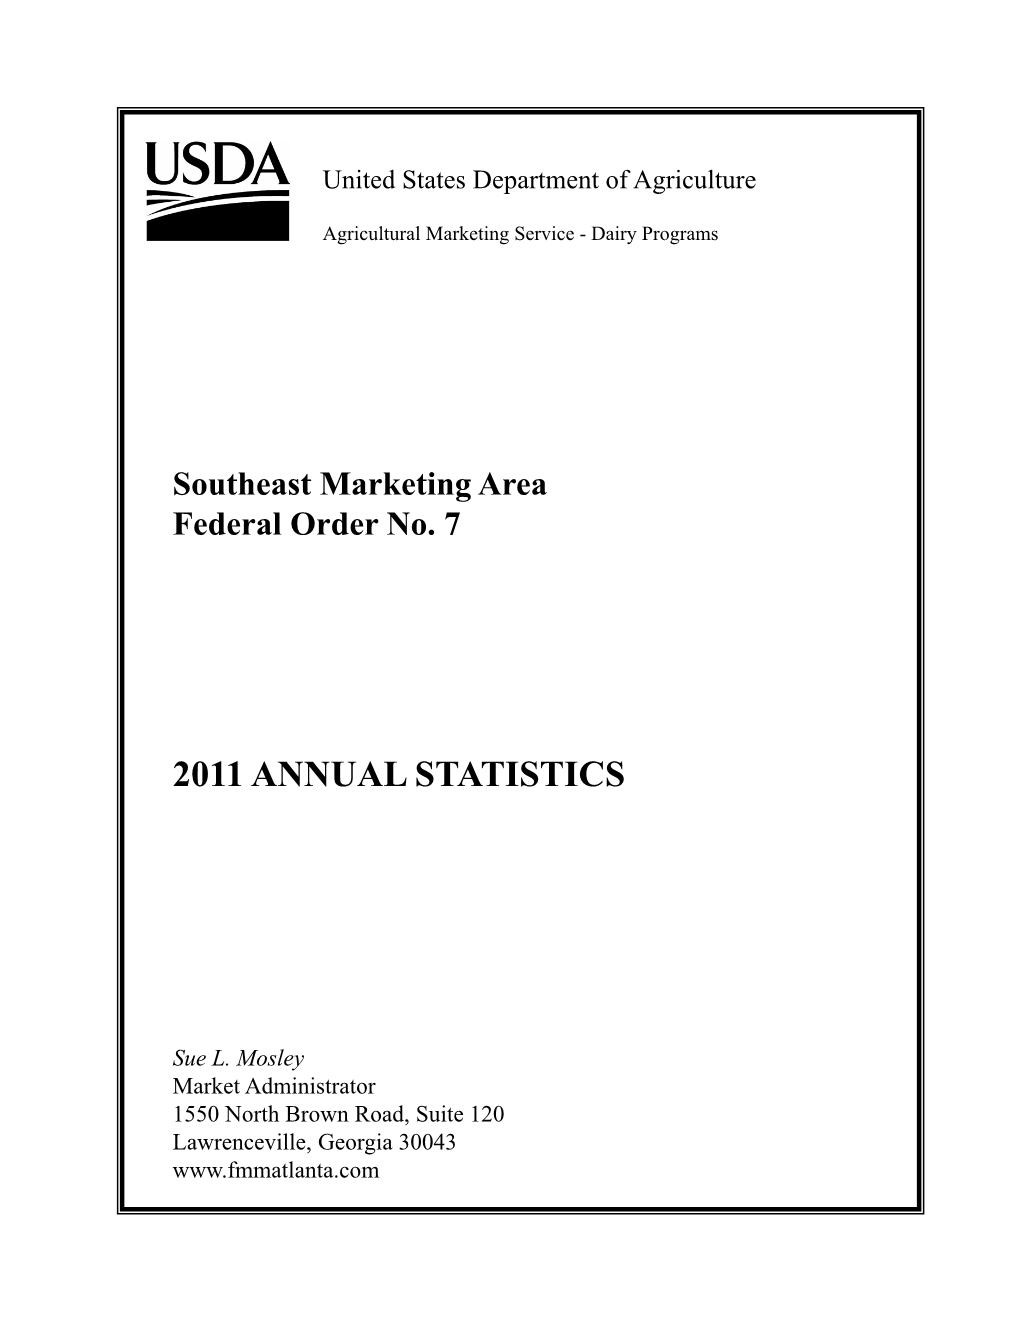 2011 Annual Statistics